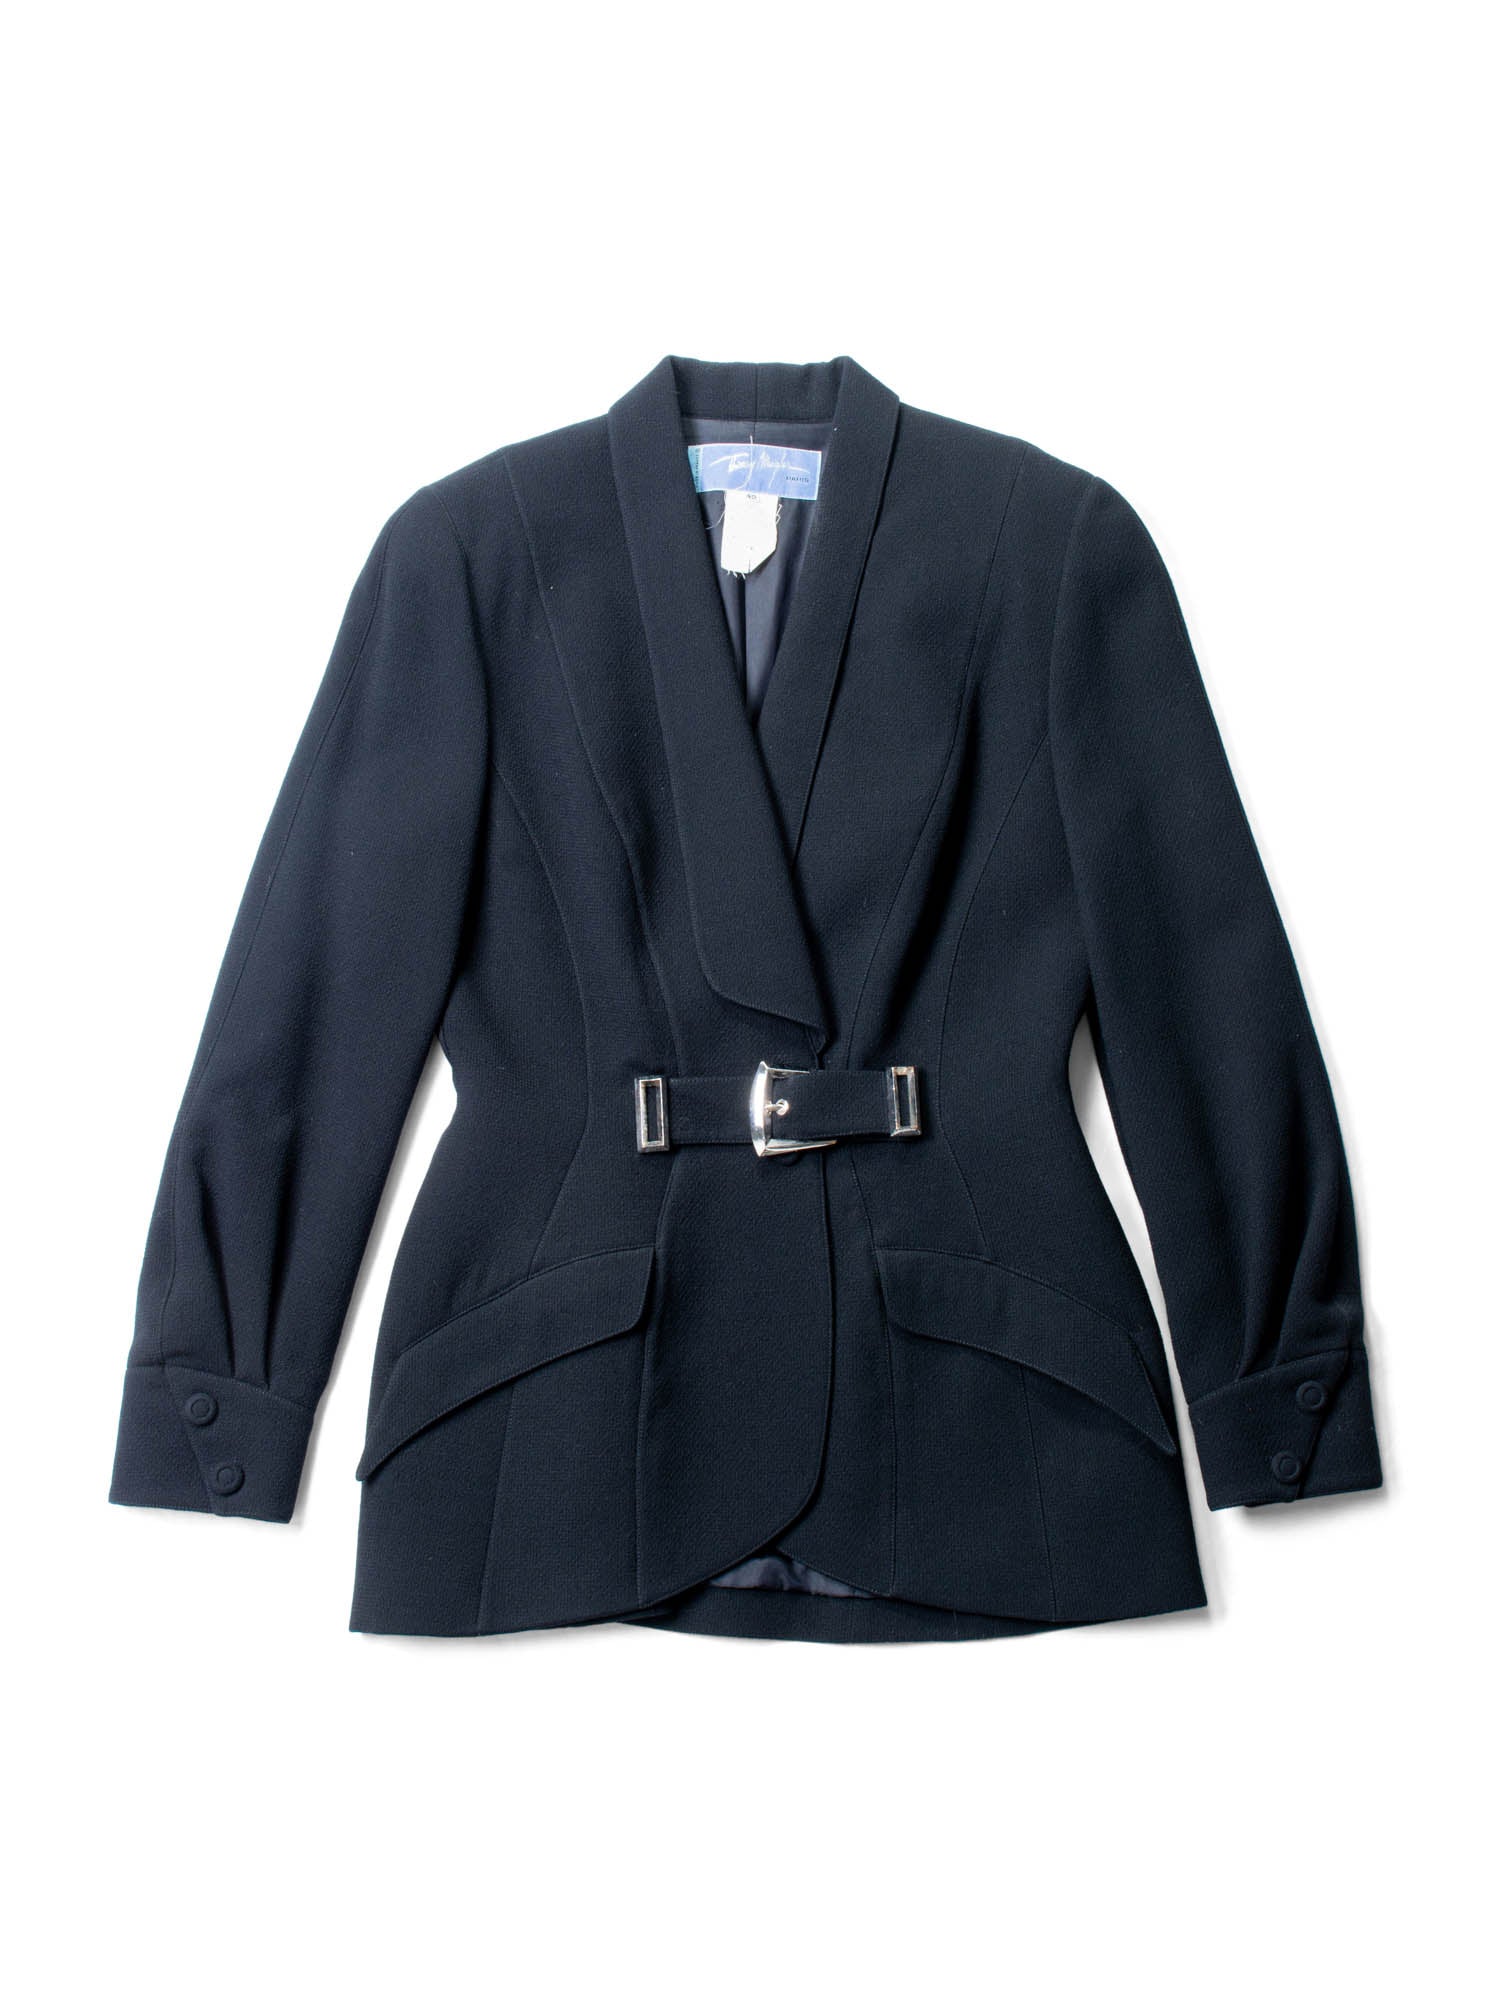 Thierry Mugler Vintage Tweed Belted Tuxedo Jacket Black-designer resale